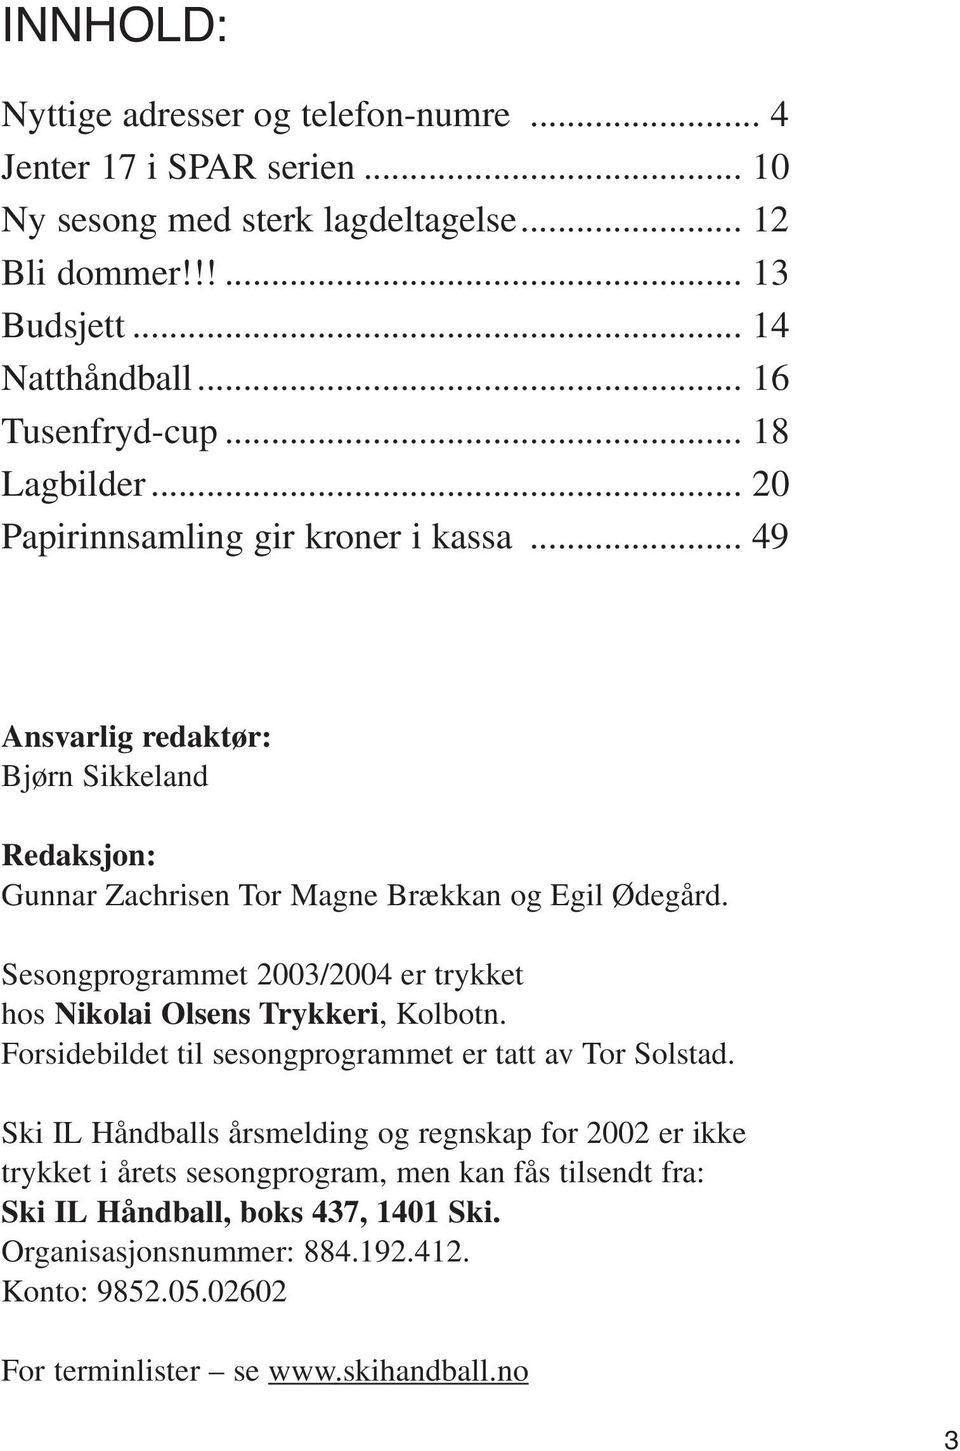 Sesongprogrammet 2003/2004 er trykket hos Nikolai Olsens Trykkeri, Kolbotn. Forsidebildet til sesongprogrammet er tatt av Tor Solstad.